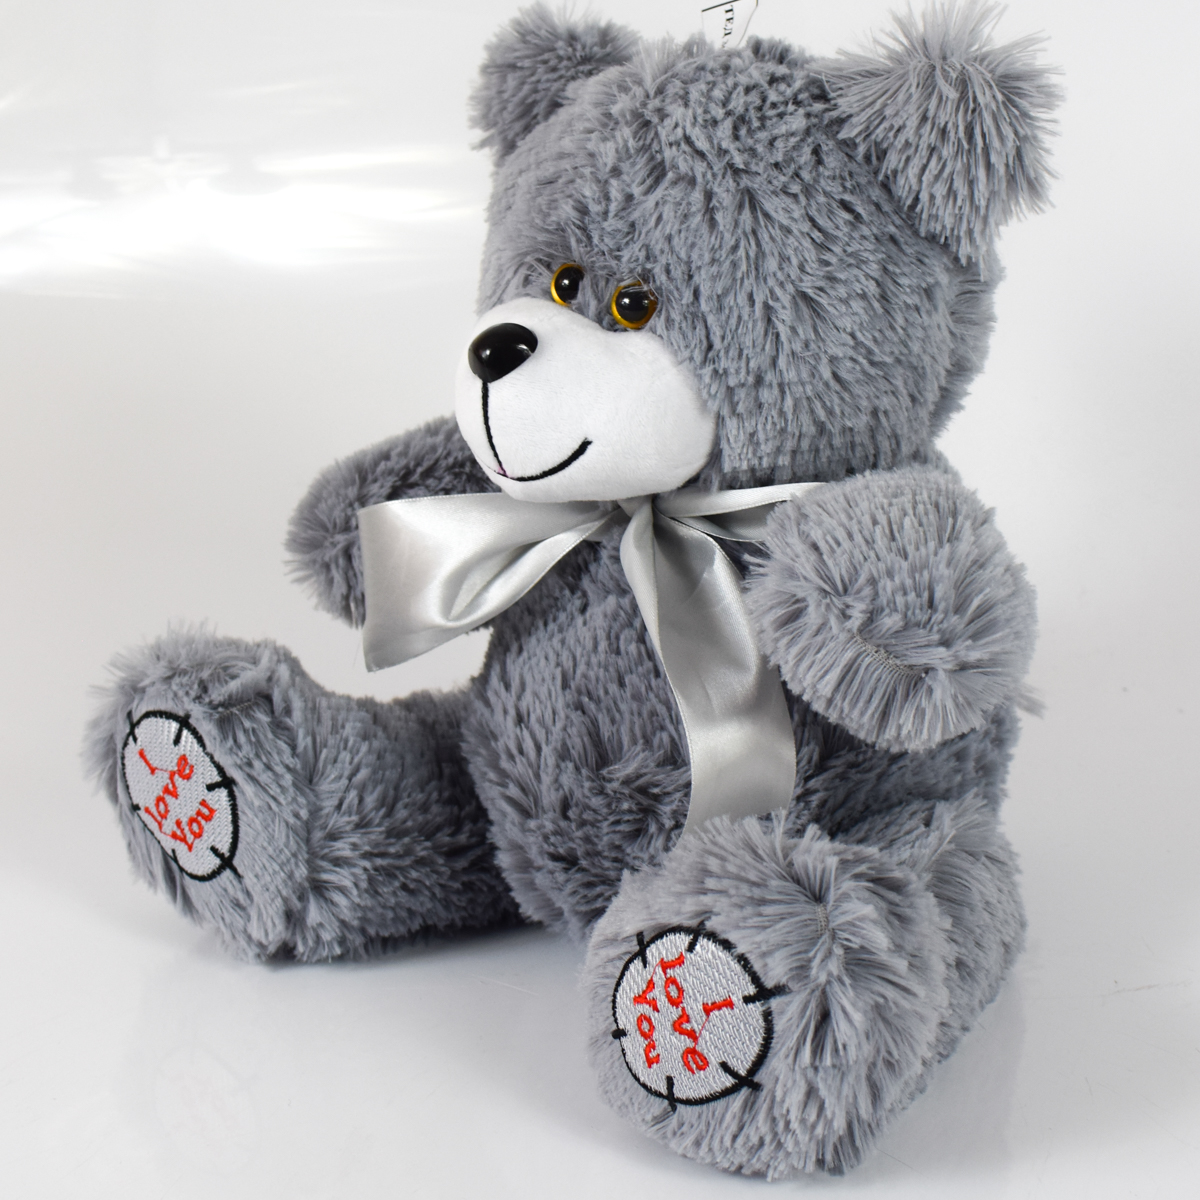 Мишка плюшевый мягкий медведь Тед 50 см. Мягкая игрушка медведь. Цвет серый.